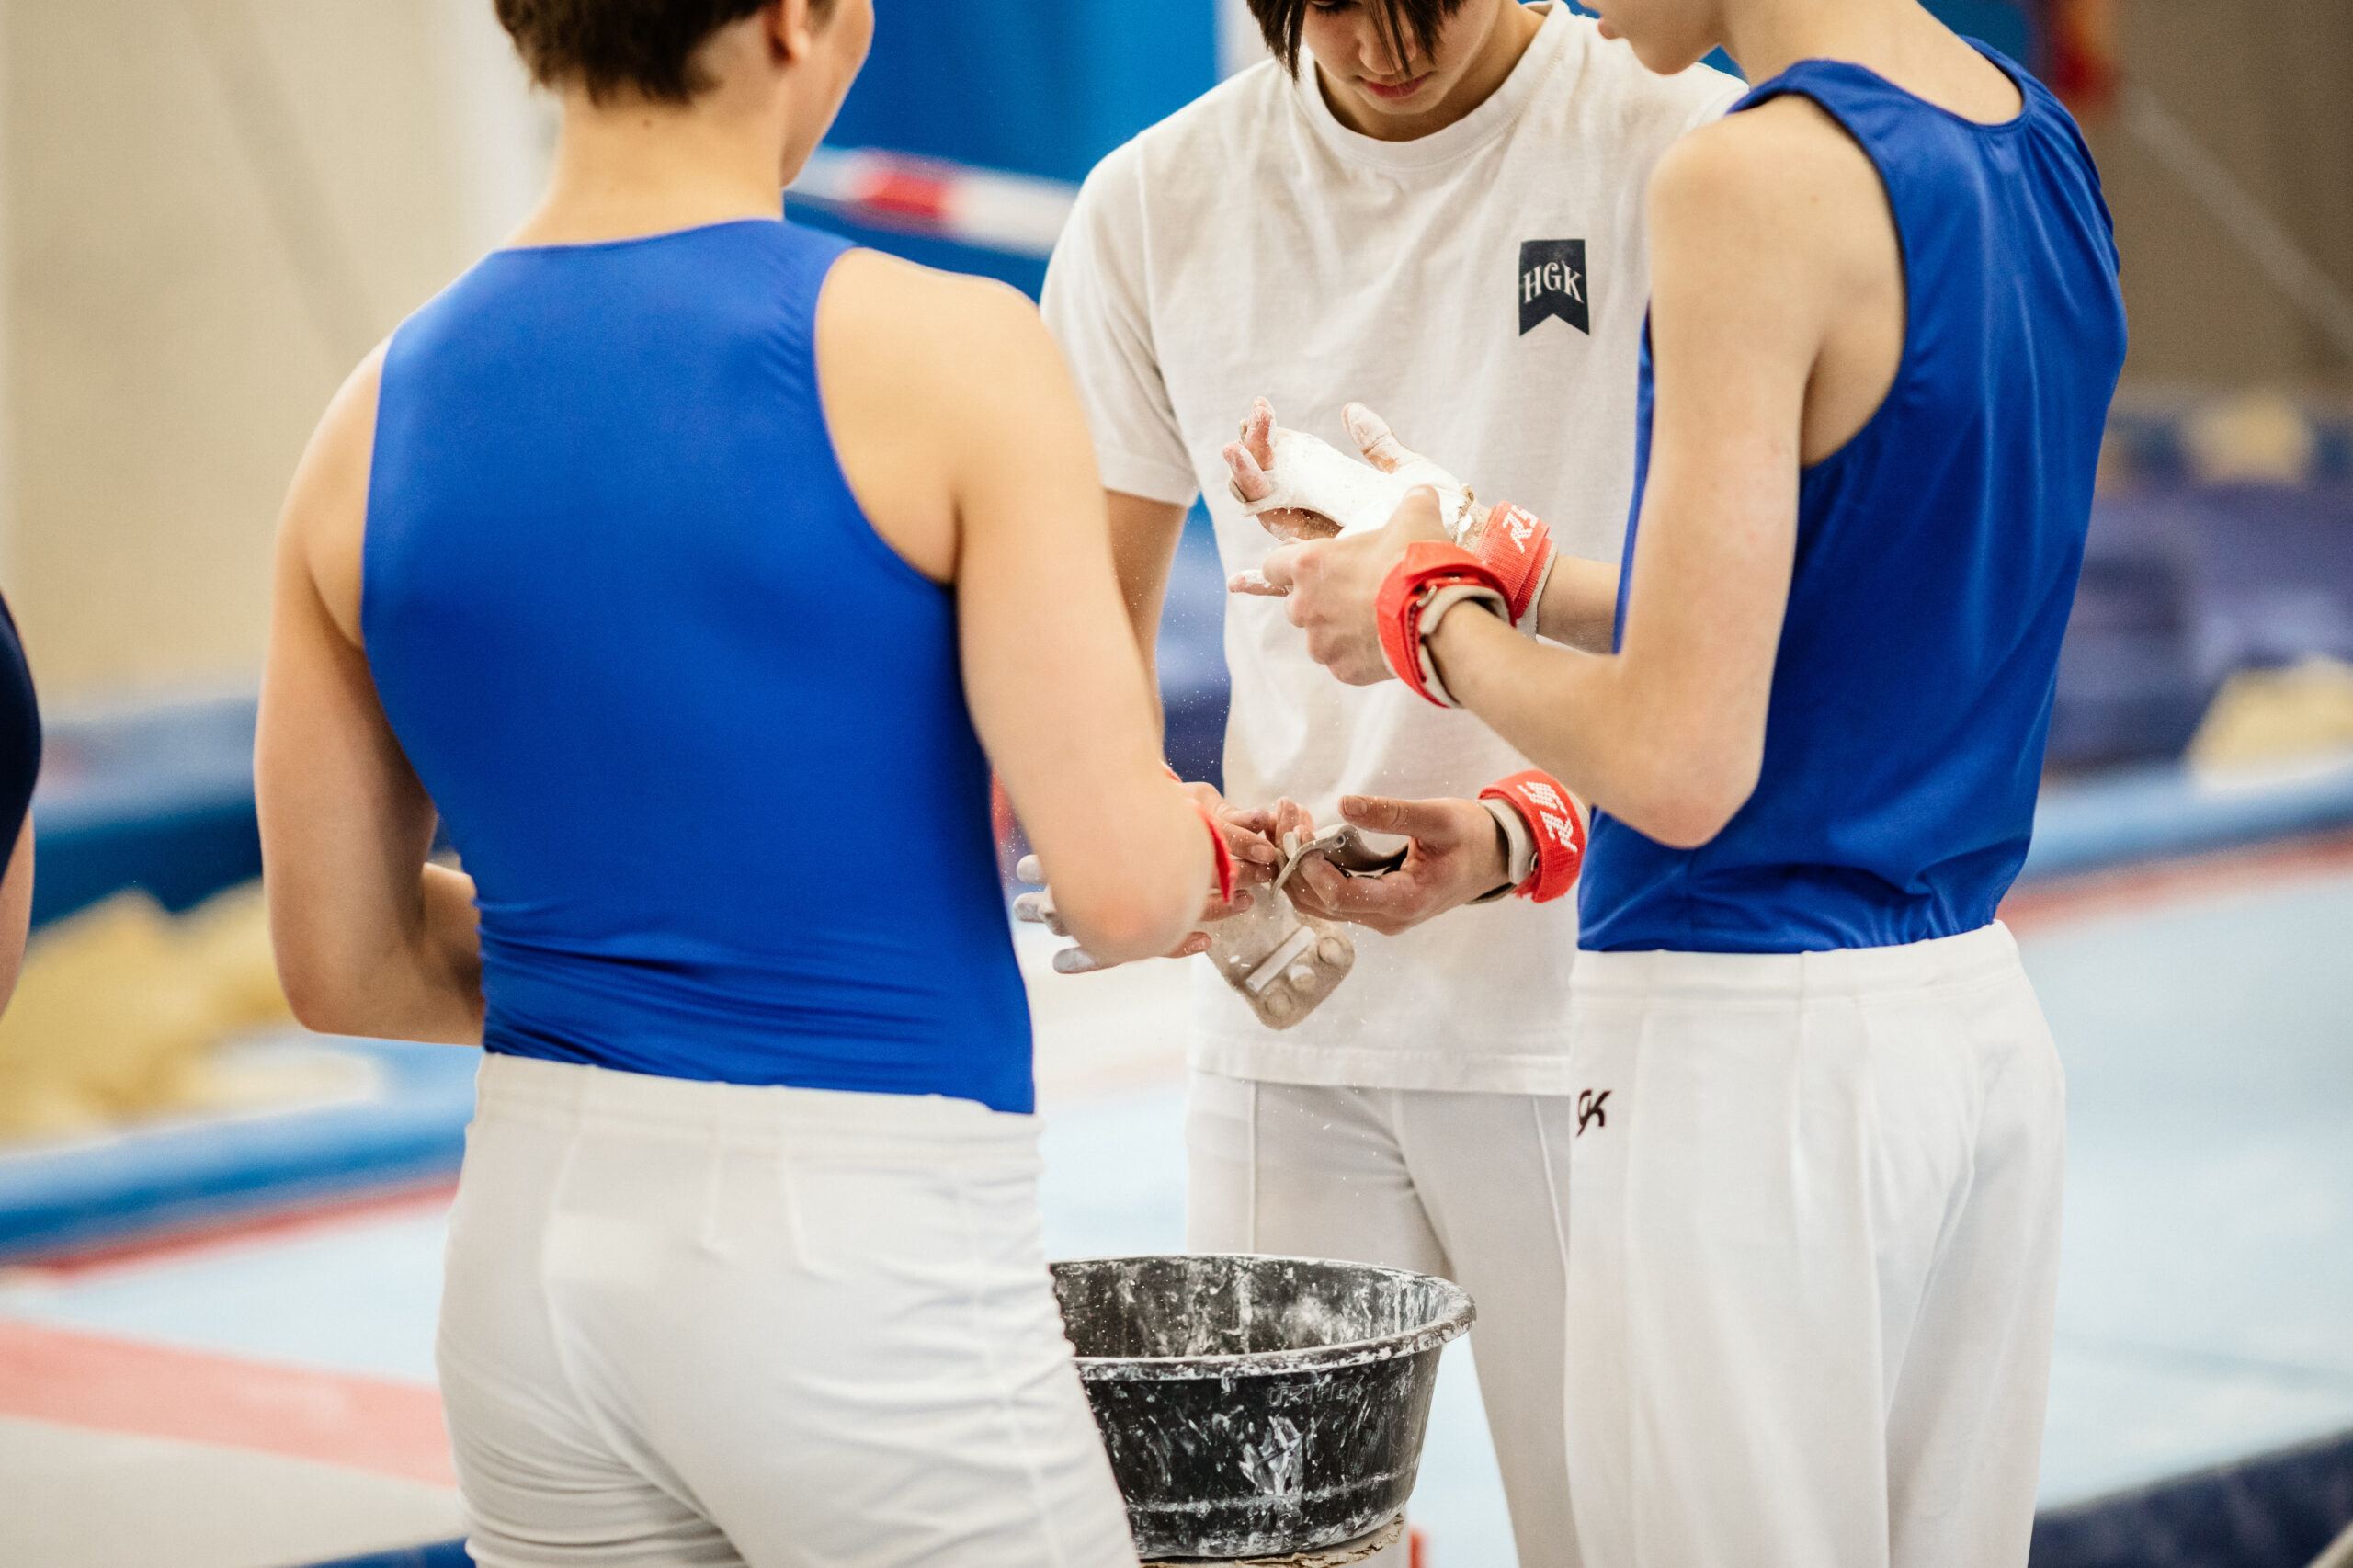 Gymnastik idrottare sätter kalk på sina händer